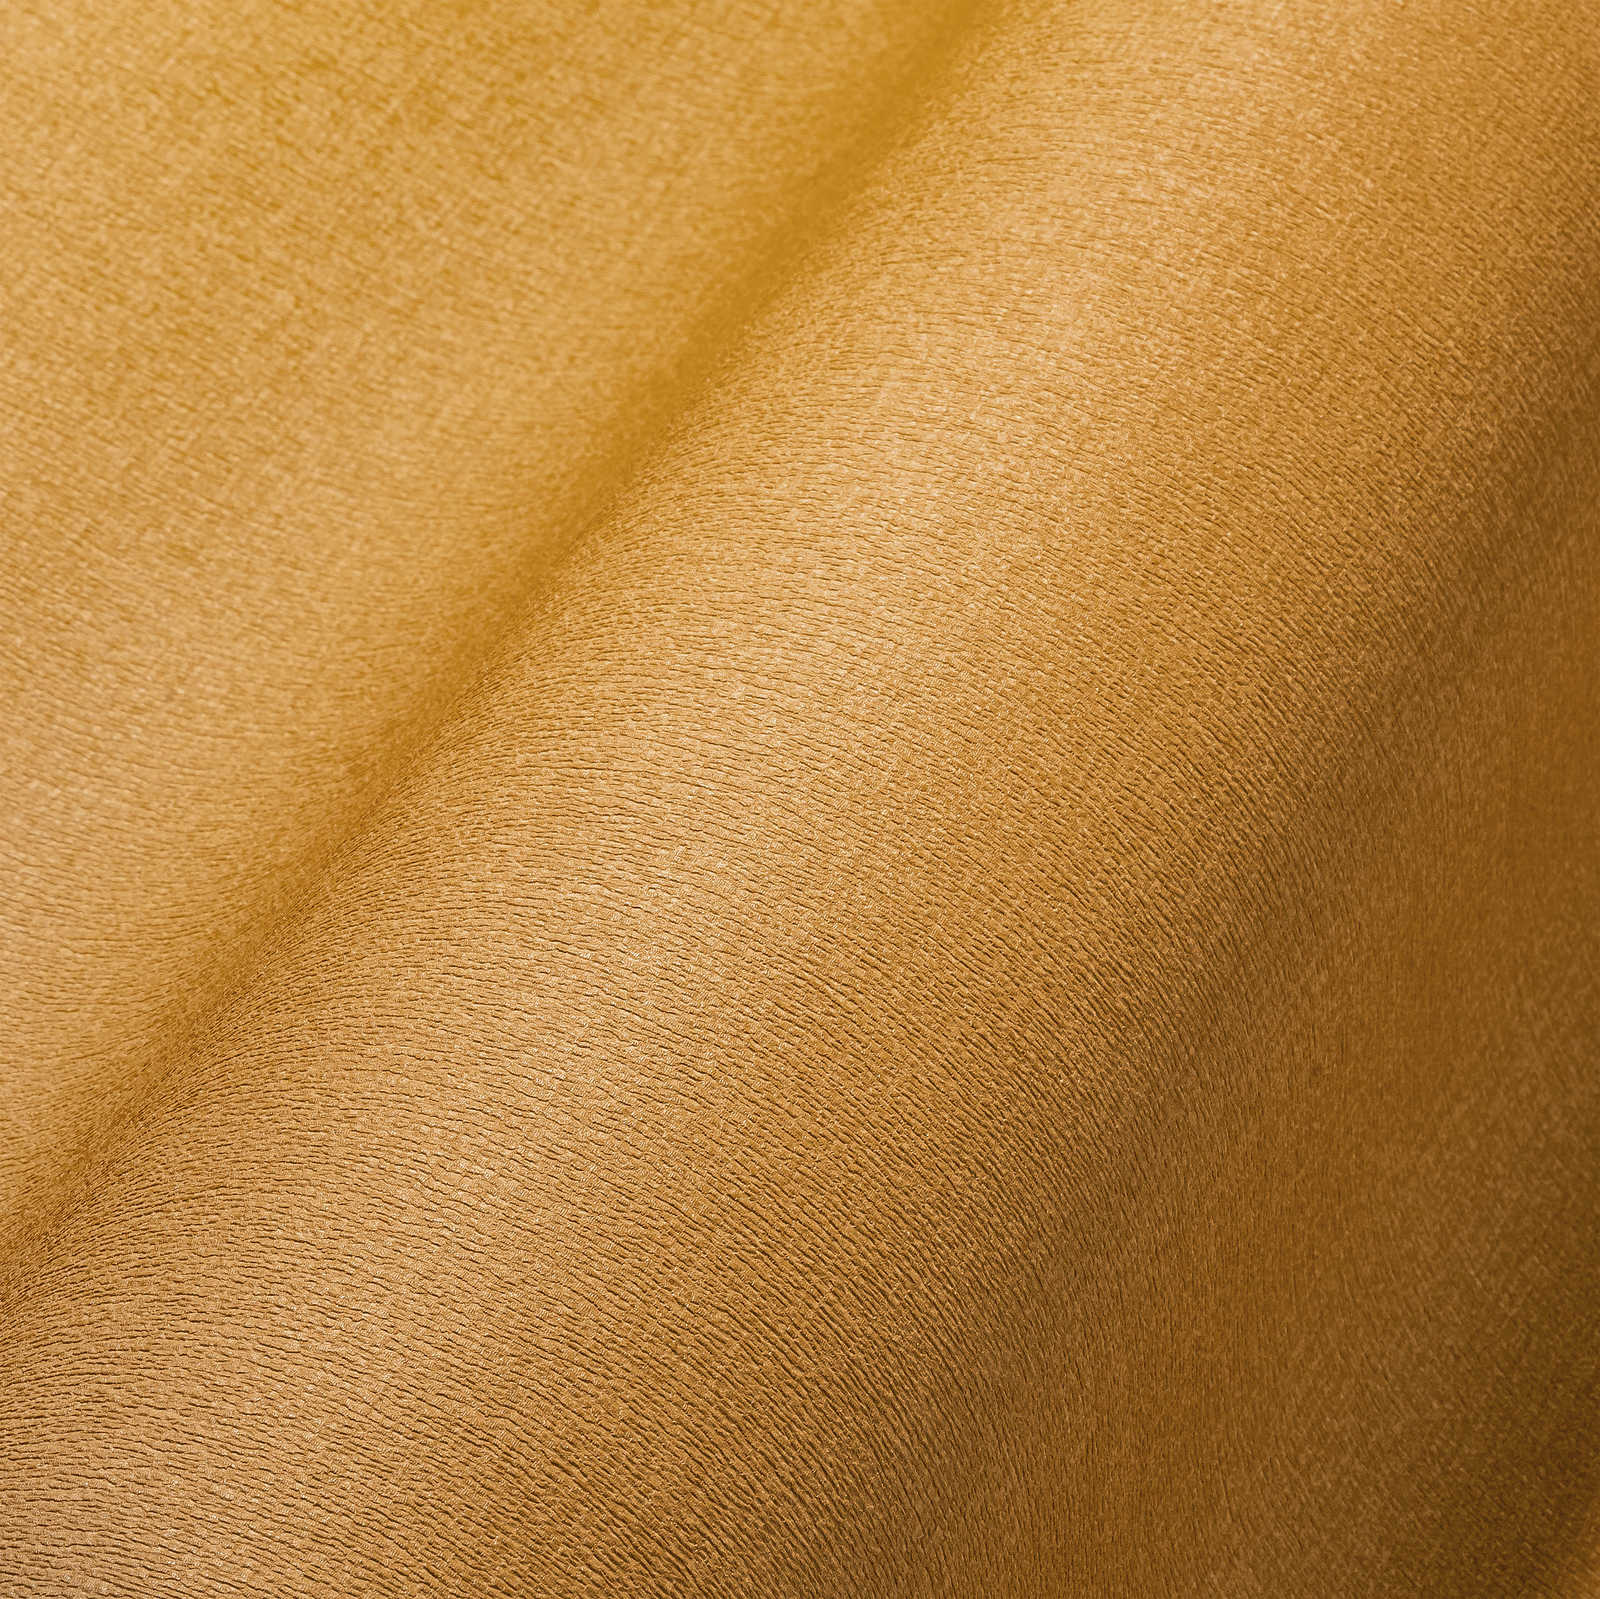             Papel pintado no tejido liso en colores vivos - amarillo
        